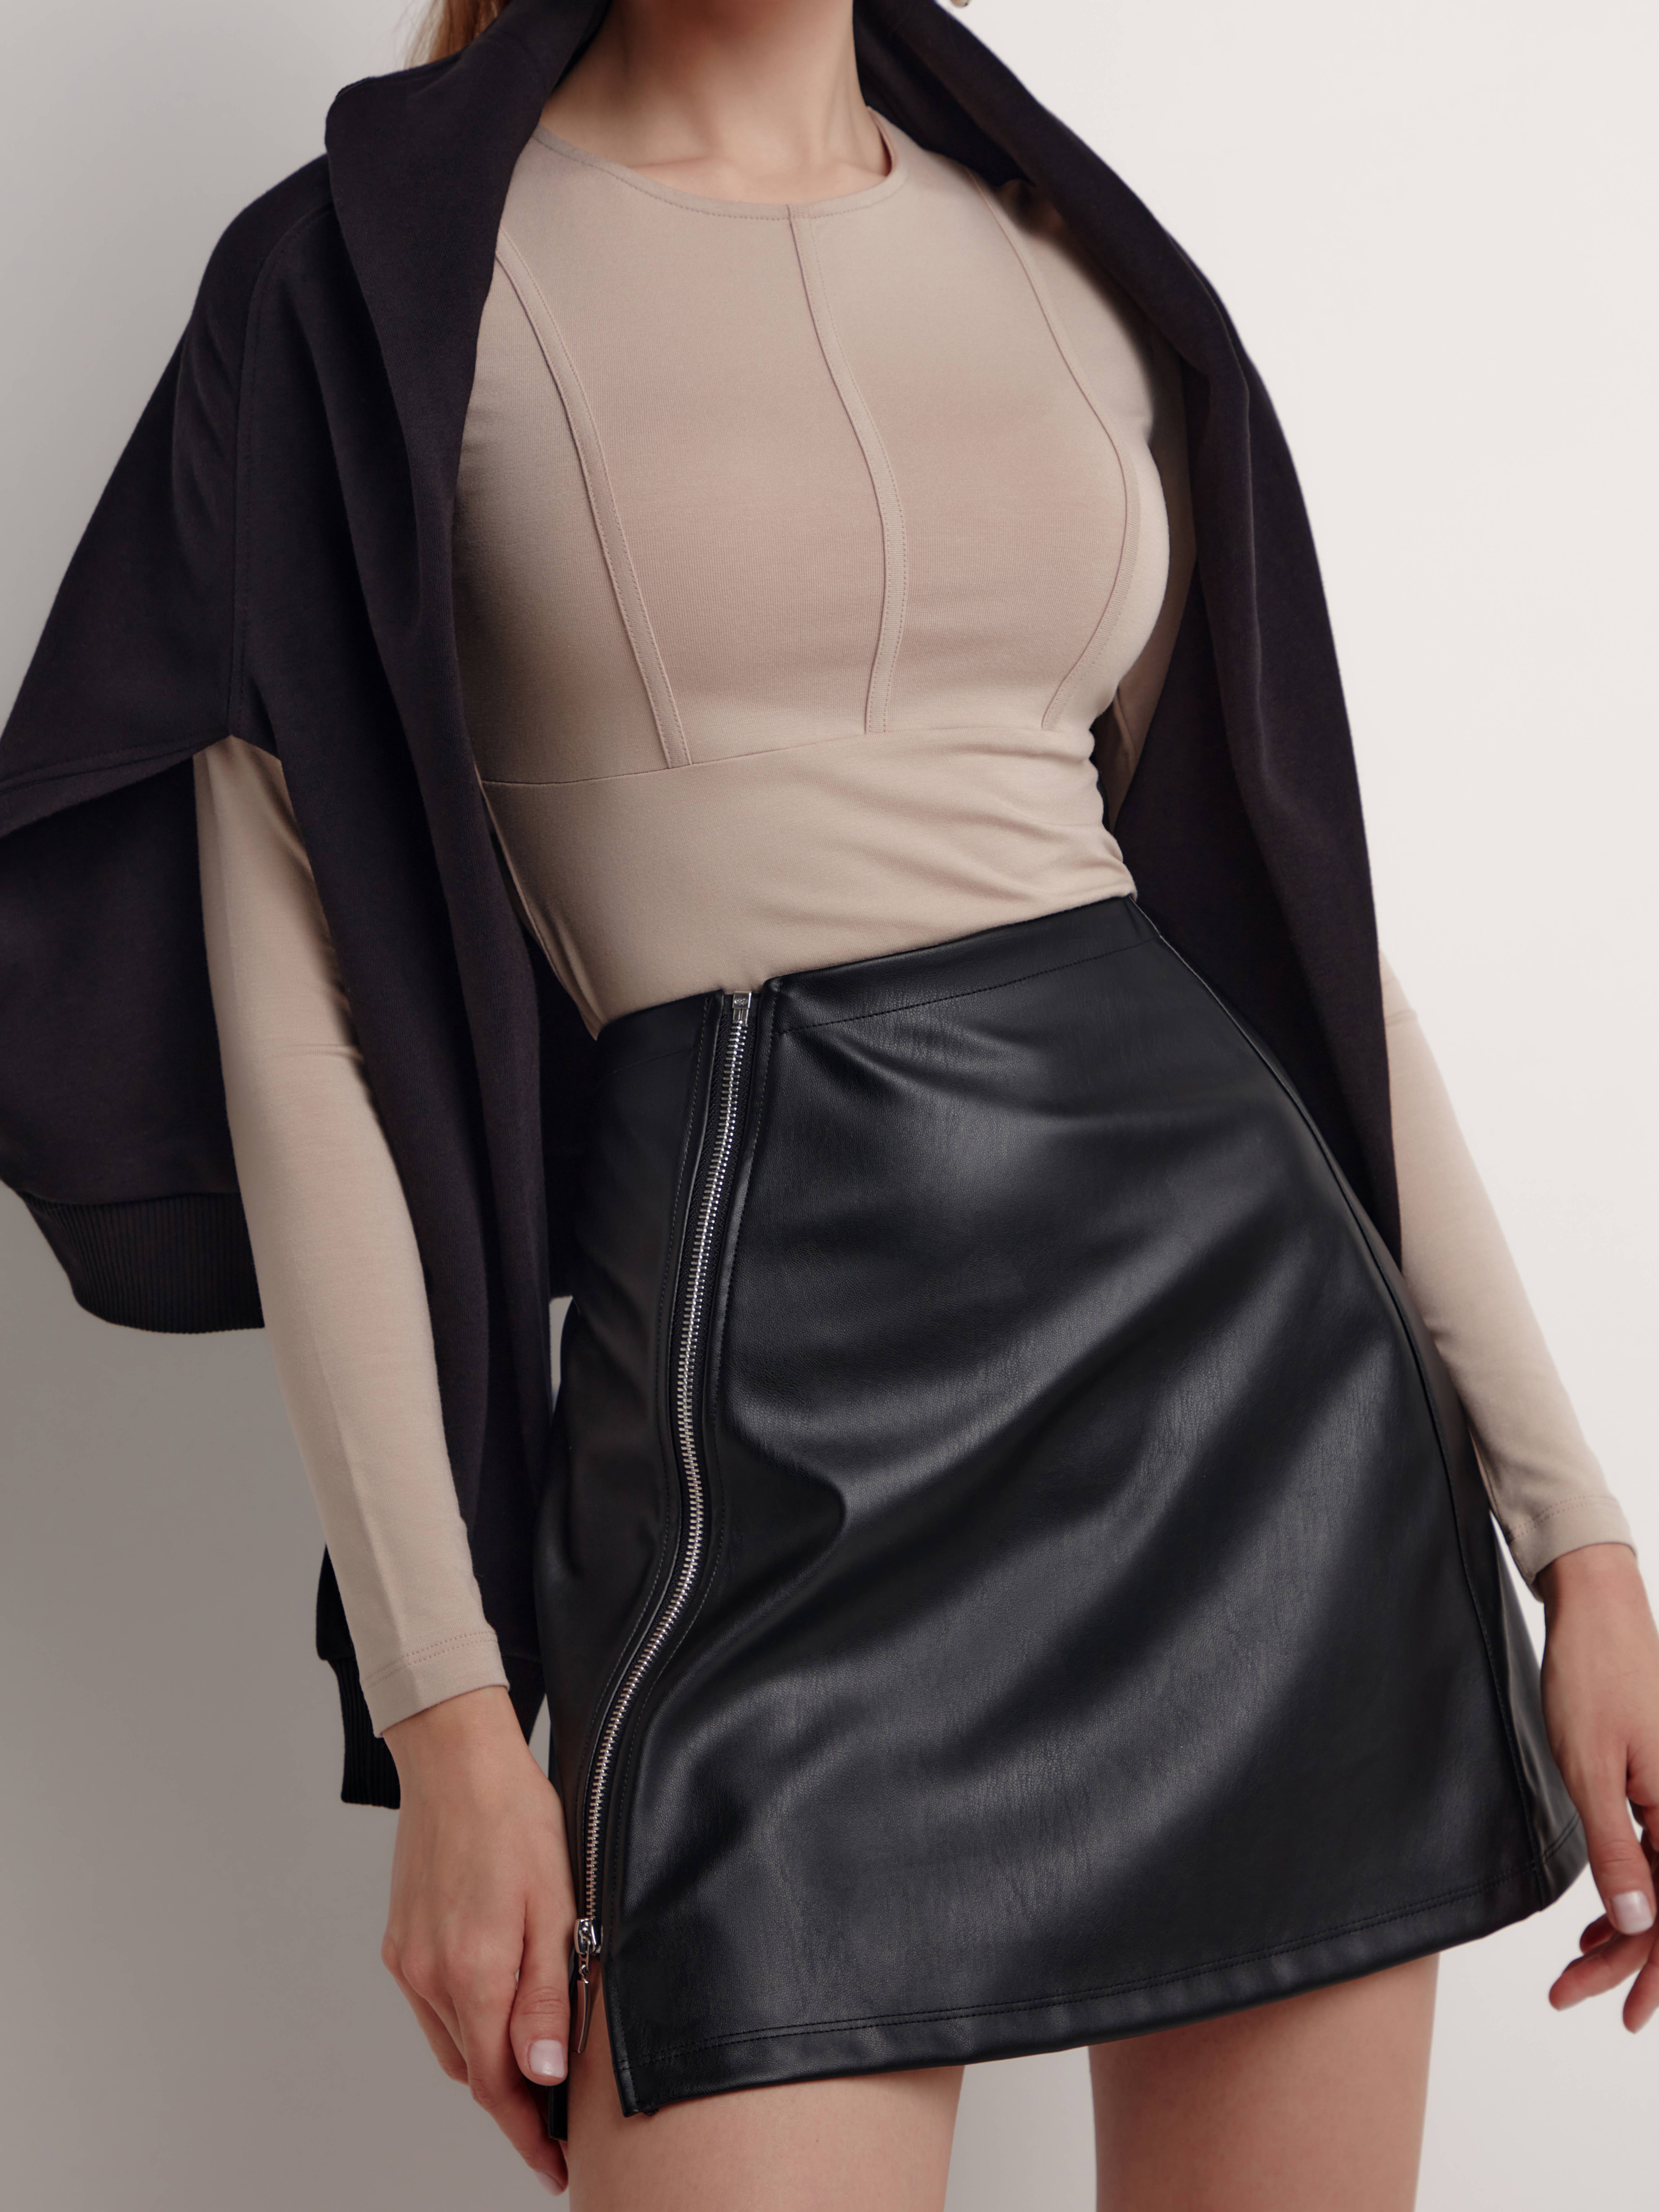 Mini-юбка из экокожи на ассиметричной молнии LU 1816 Conte черного цвета